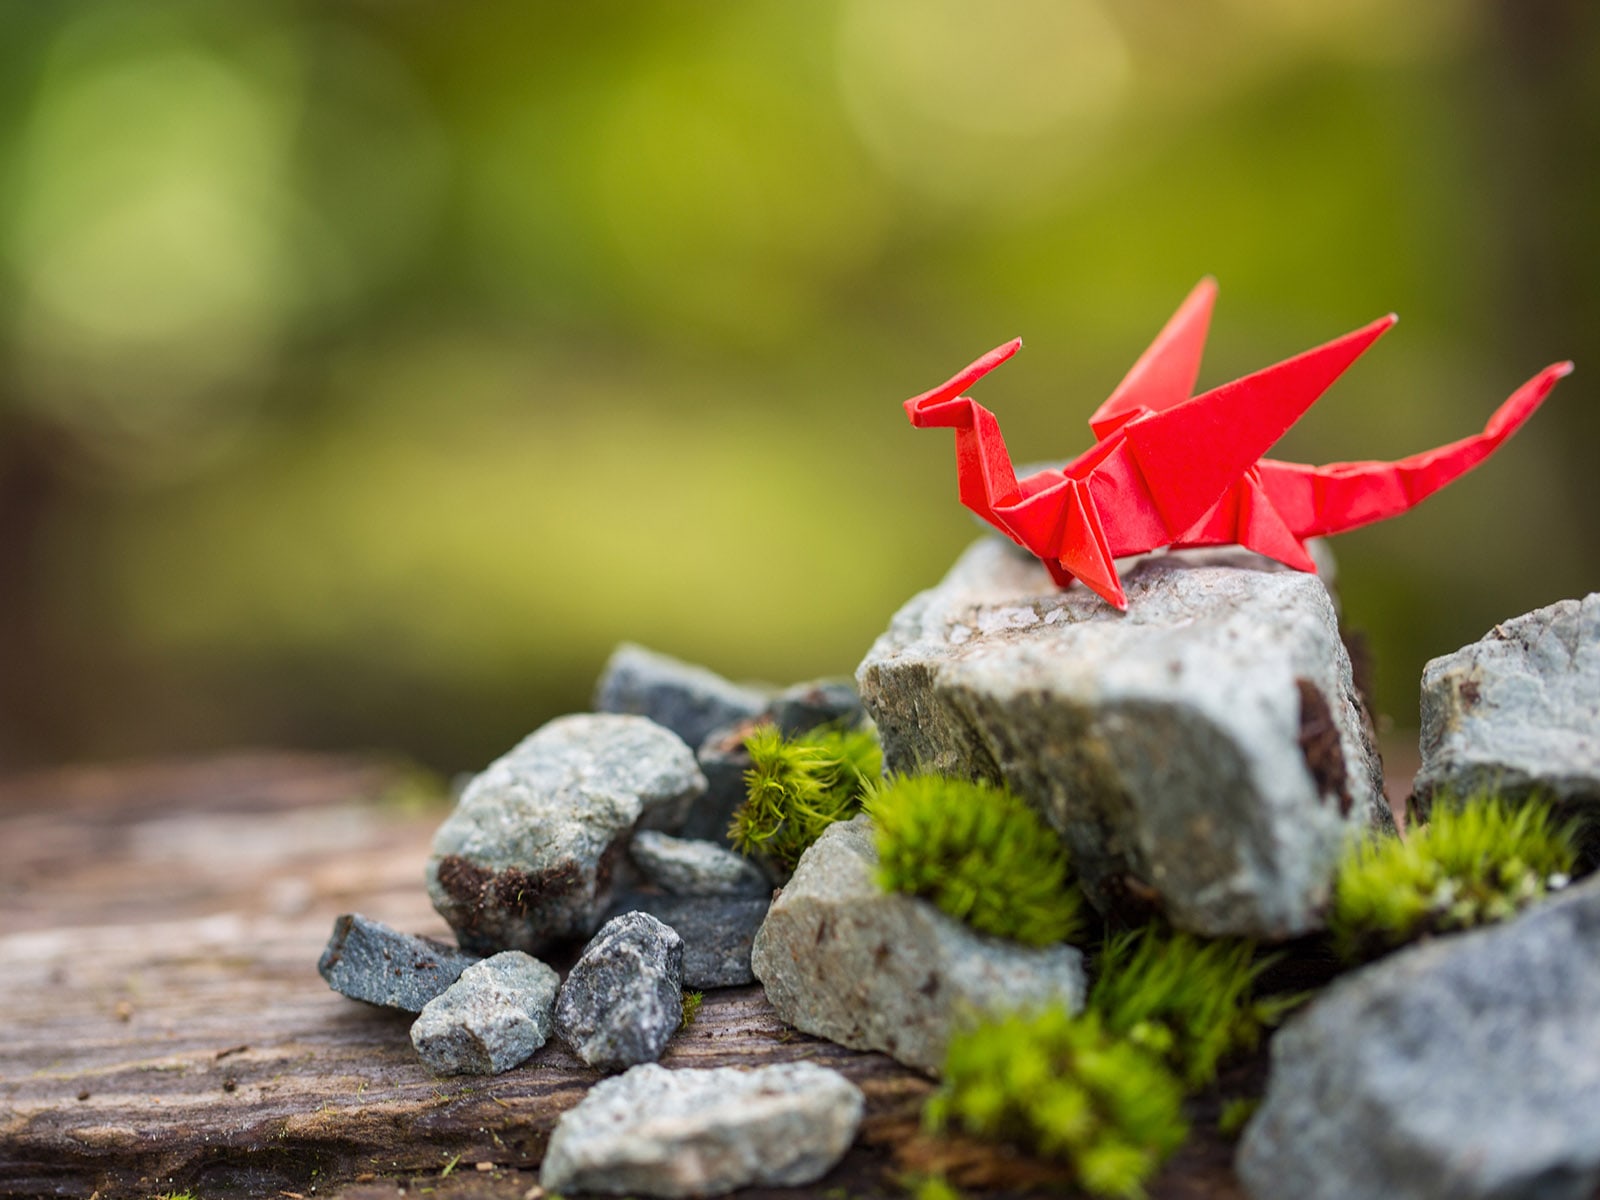 Un dragón de papel origami rojo sobre una roca cubierta de musgo.